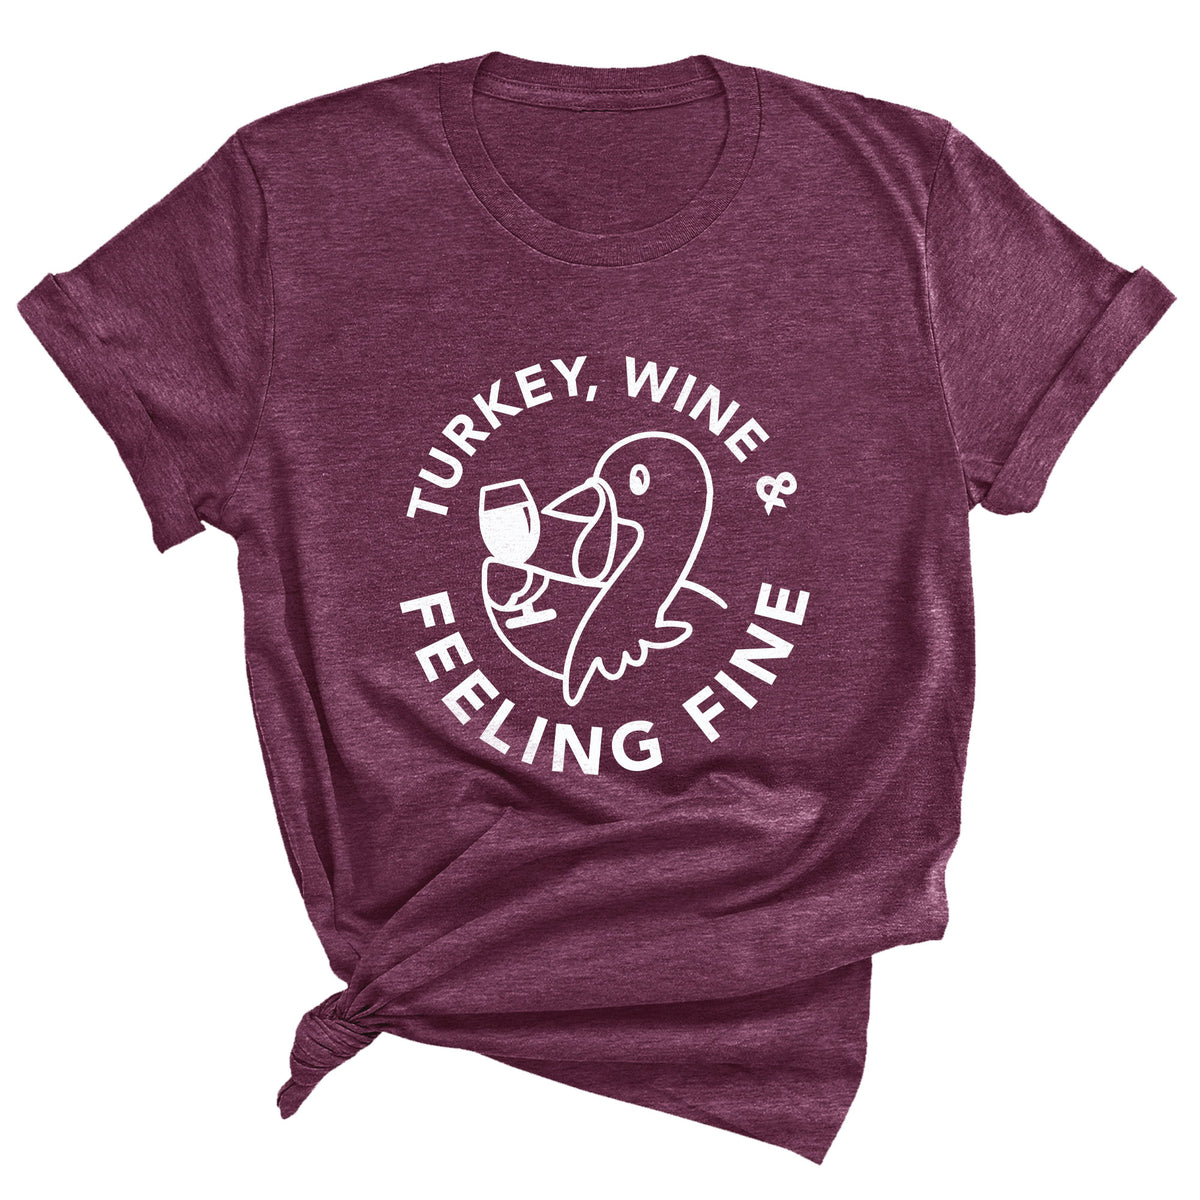 Turkey, Wine & Feeling Fine Unisex T-Shirt